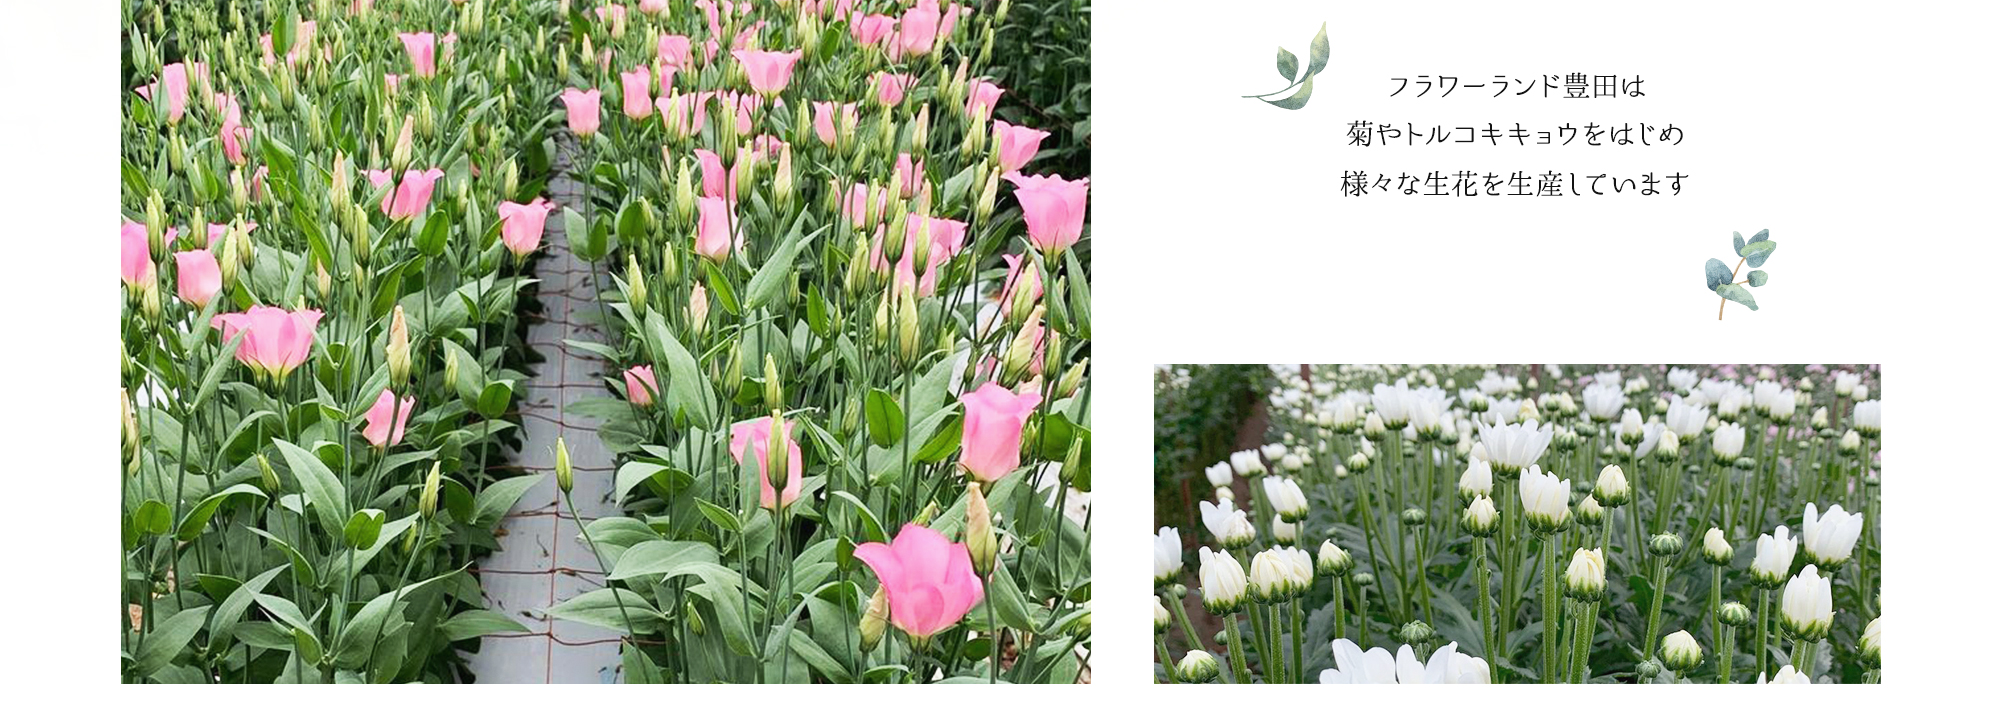 フラワーランド豊田は菊やトルコキキョウをはじめ様々な生花を生産しています